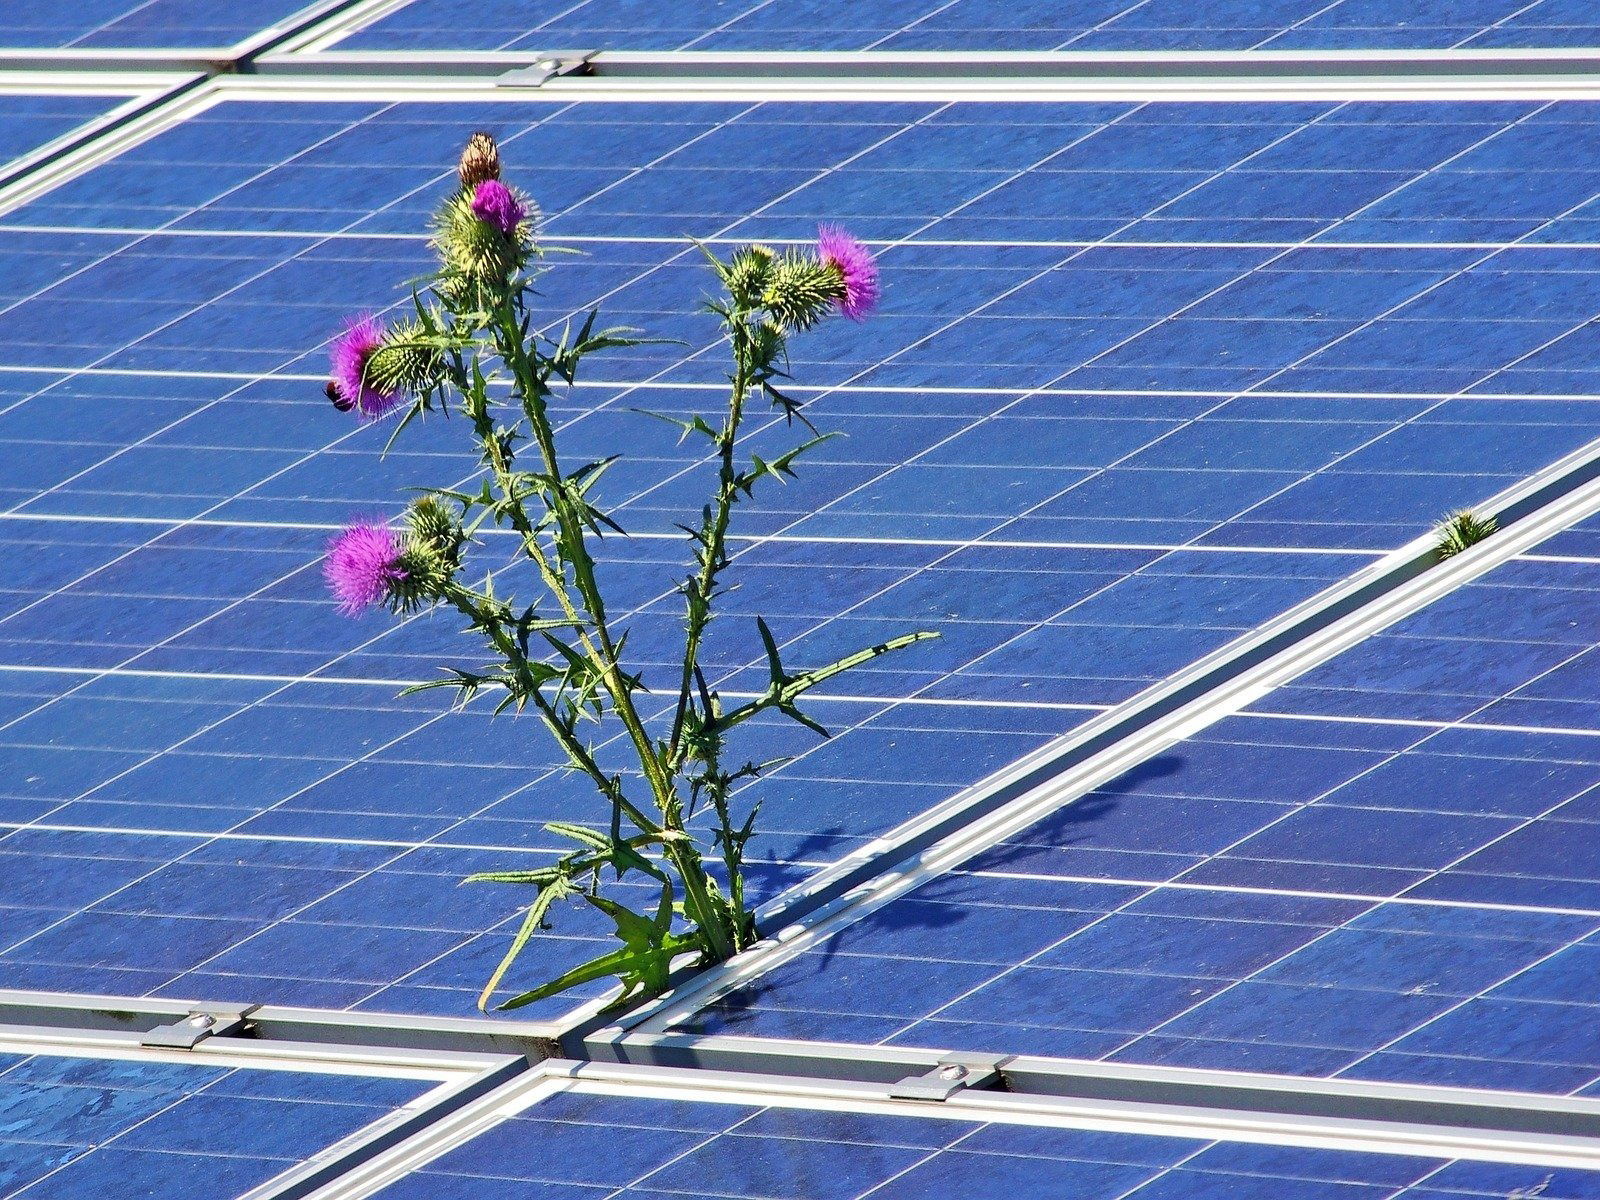 Tschechien gibt landwirtschaftliche Flächen für Solaranlagen frei